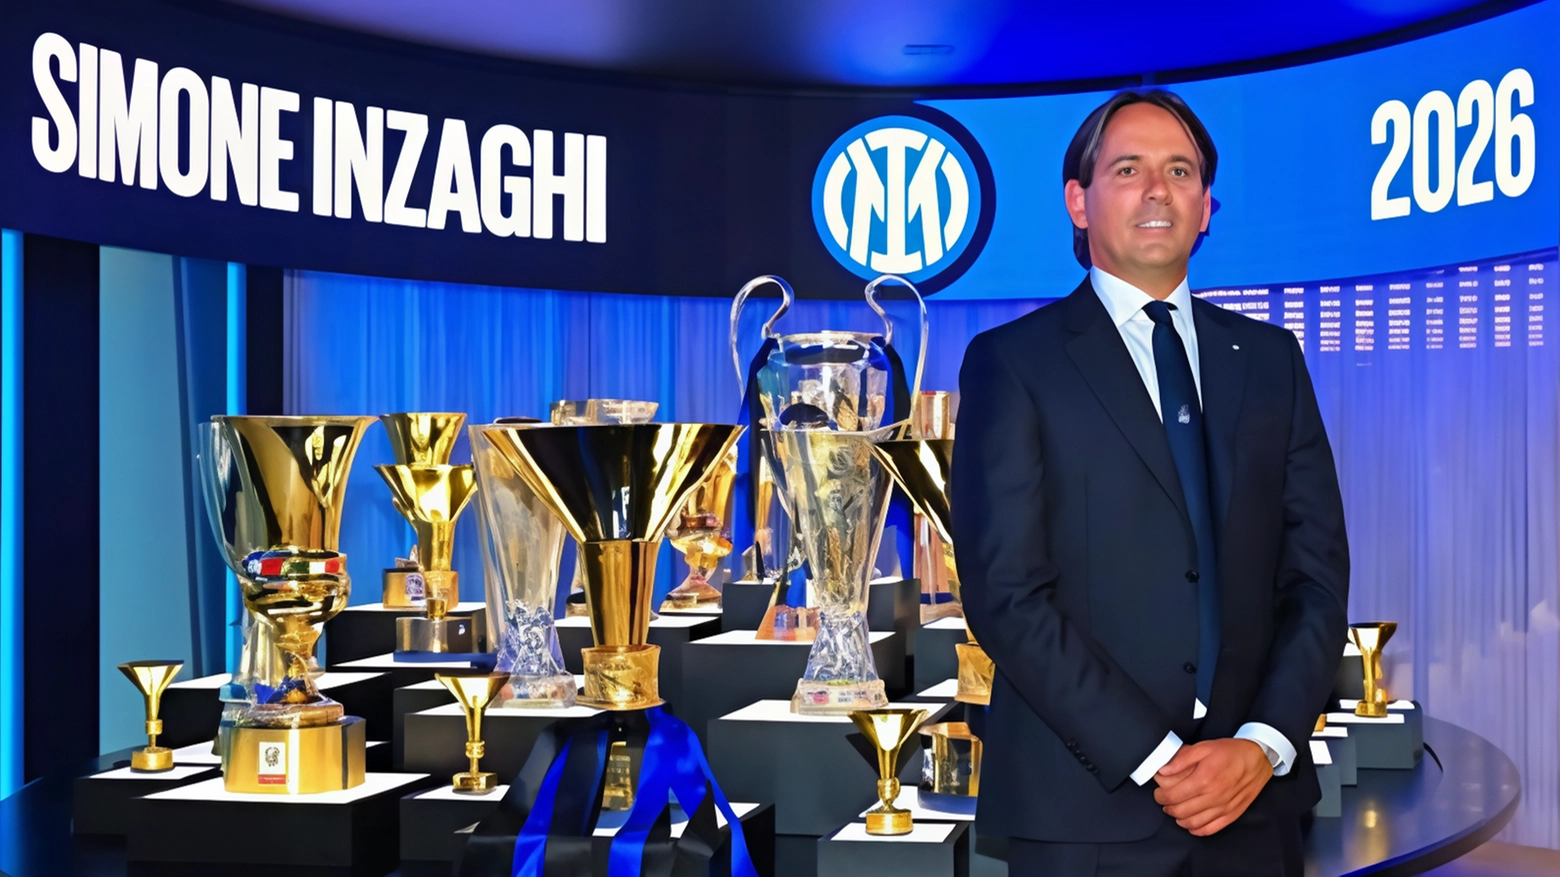 L’Inter si tiene stretto Inzaghi fino al 2026: "La sfida più grande ora sarà migliorarsi"